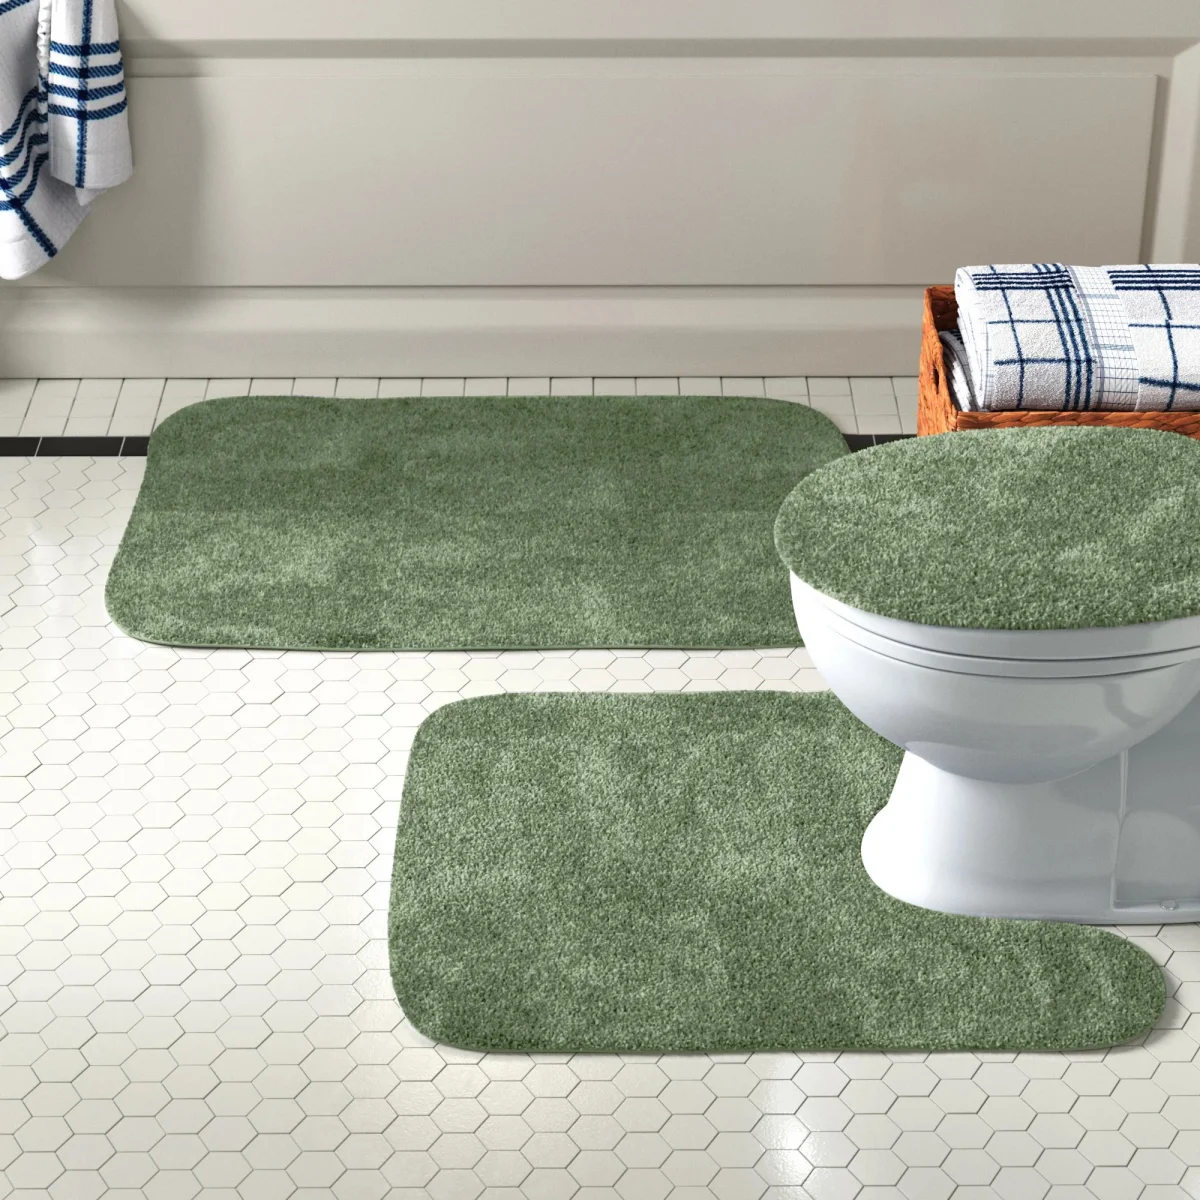 gruene teppiche auf dem fliesenboden im badezimmer vor bad und toilette